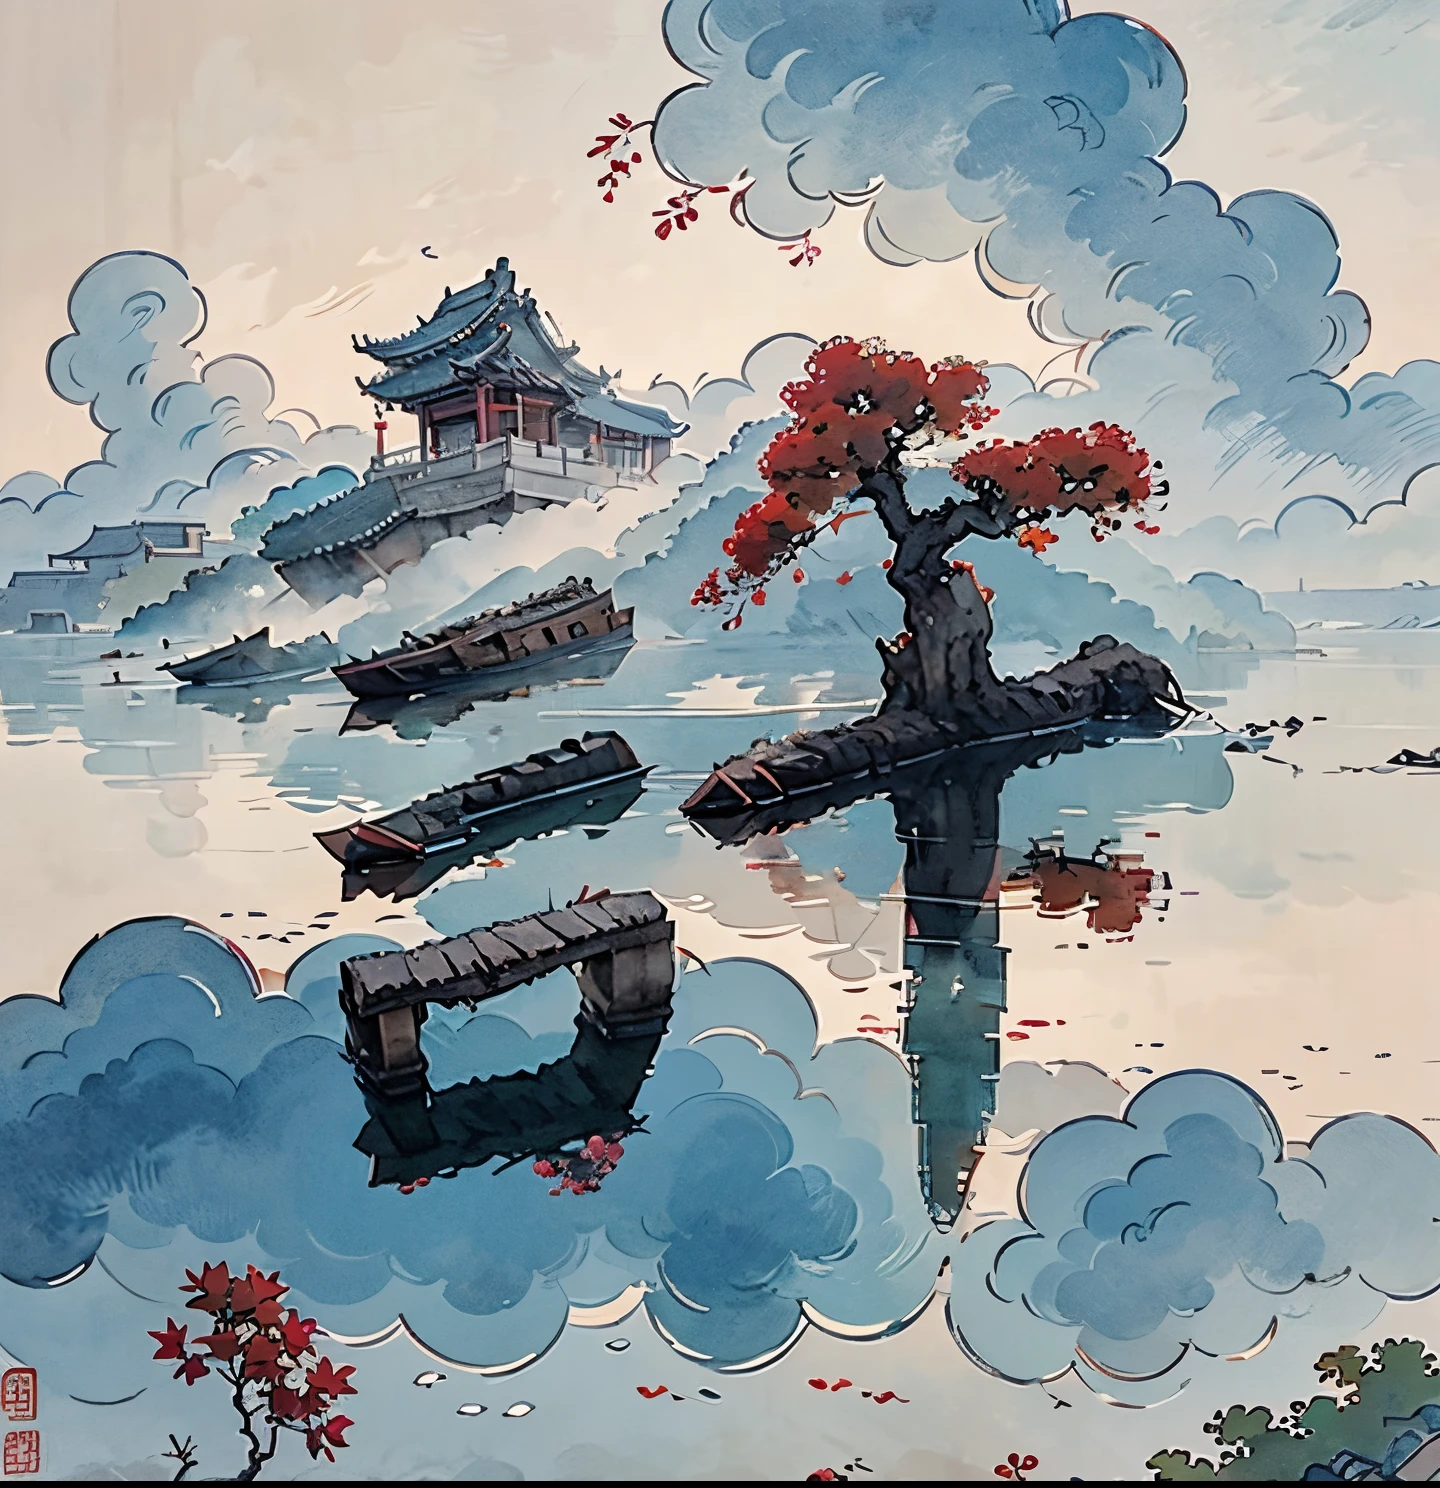 (عمق التأثير الميداني)  (مجموعة الهندسة المعمارية الصينية القديمة في جزيرة معزولة),  (برج,  مبنى)  (جناح,  أشجار متنوعة,  سحاب,  اشجار خضراء,  اشجار القيقب,  أشجار حمراء,  الحجارة الصغيرة,  الطيور الصغيرة),  أسلوب الألوان المائية الصينية,  (أسلوب الرسم الصيني),  المناظر الطبيعية الصينية,  اللوحات المائية الصينية التقليدية,  اللوحات الصينية,  ألوان مائية 8K,  (خواطر),  clear  boundaries  between  ضوء وظل,  ضوء وظل,  ضوء وظل  effect,  تحفة,  تفاصيل فائقة,  عمل ملحمي,  عالي الجودة,  جودة عالية,  مفصل جدا,  الفن الرسمي,  خلفية 8K موحدة,  تفاصيل فائقة，التناقض بين الضوء والظلام.